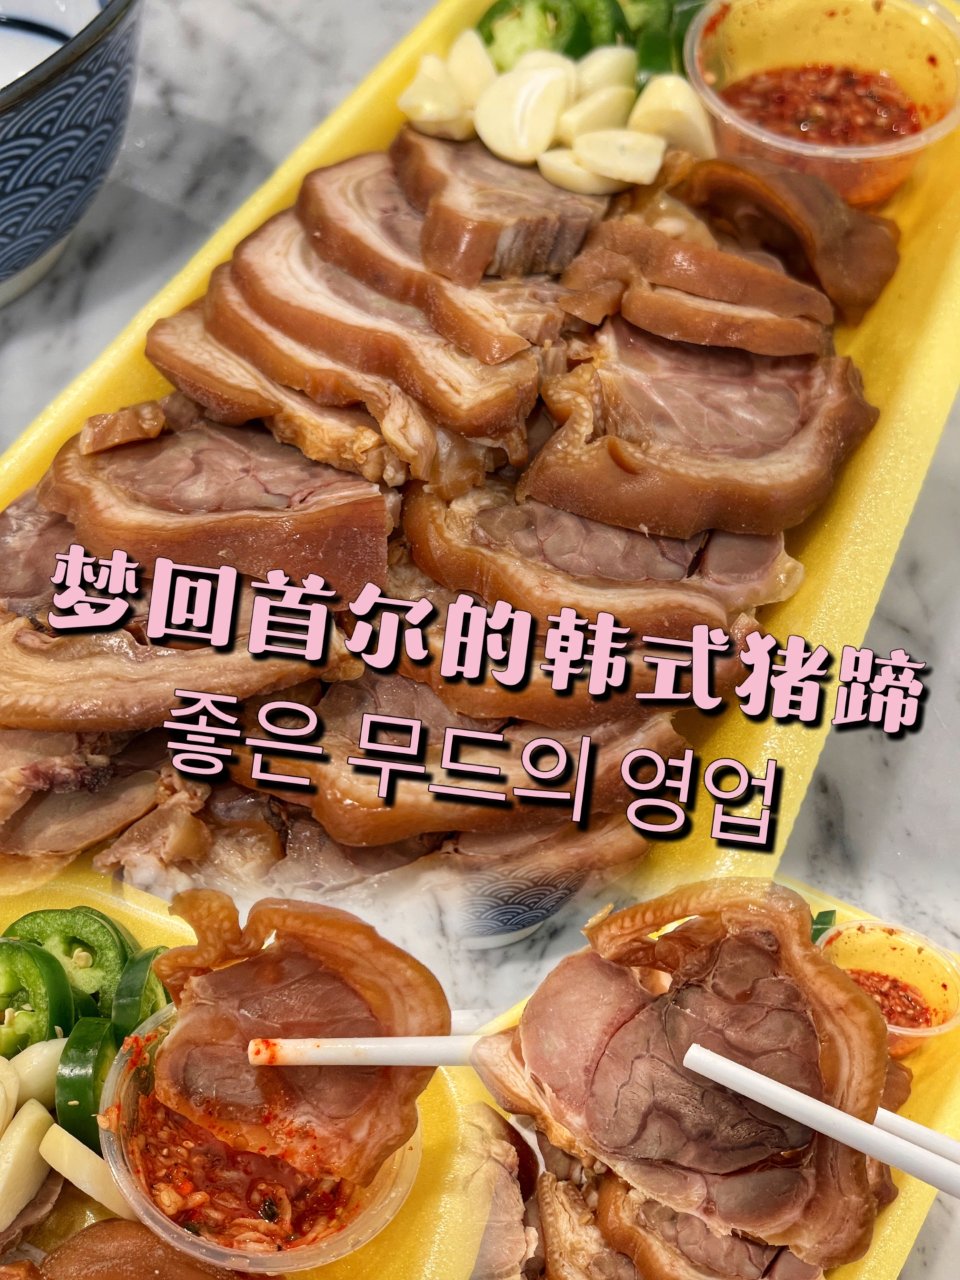 让我梦回首尔的韩国猪蹄
宝藏超市里韩国猪...